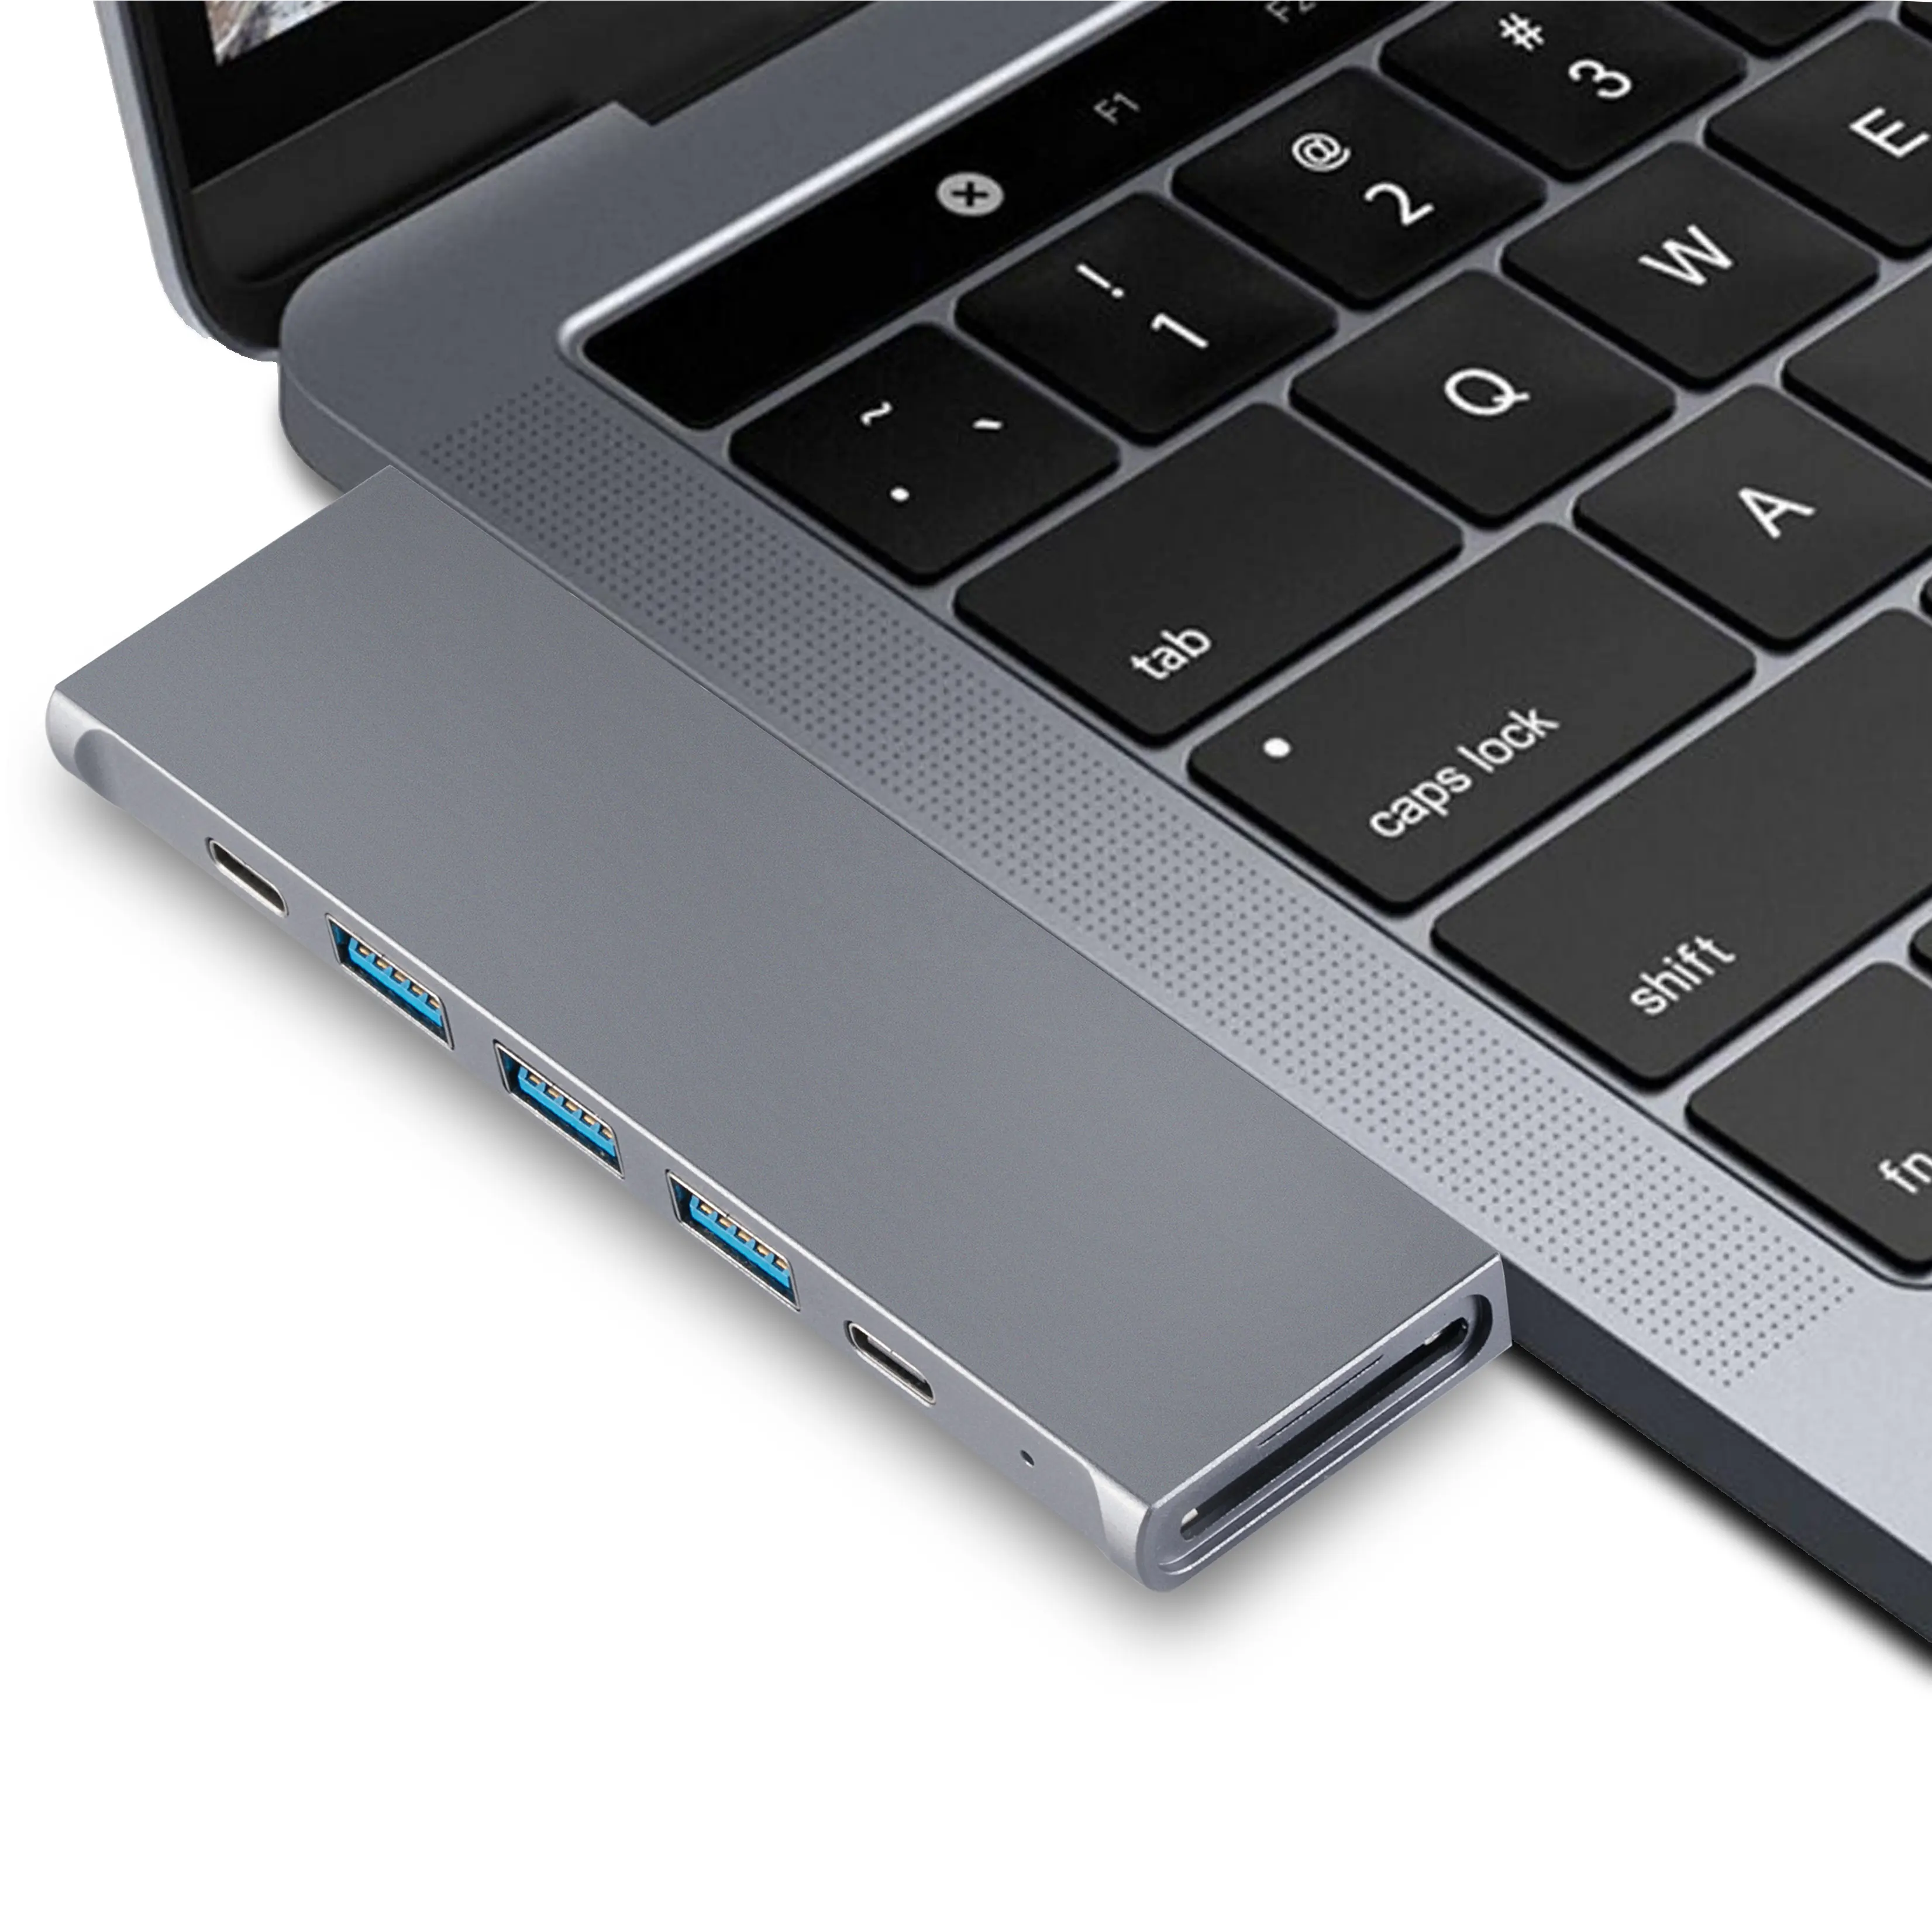 Spedizione veloce 8 in 1 USB Hub Socket per MacBook Pro e adattatore USB C Docking Station USB A Hub Thunderbolt 3